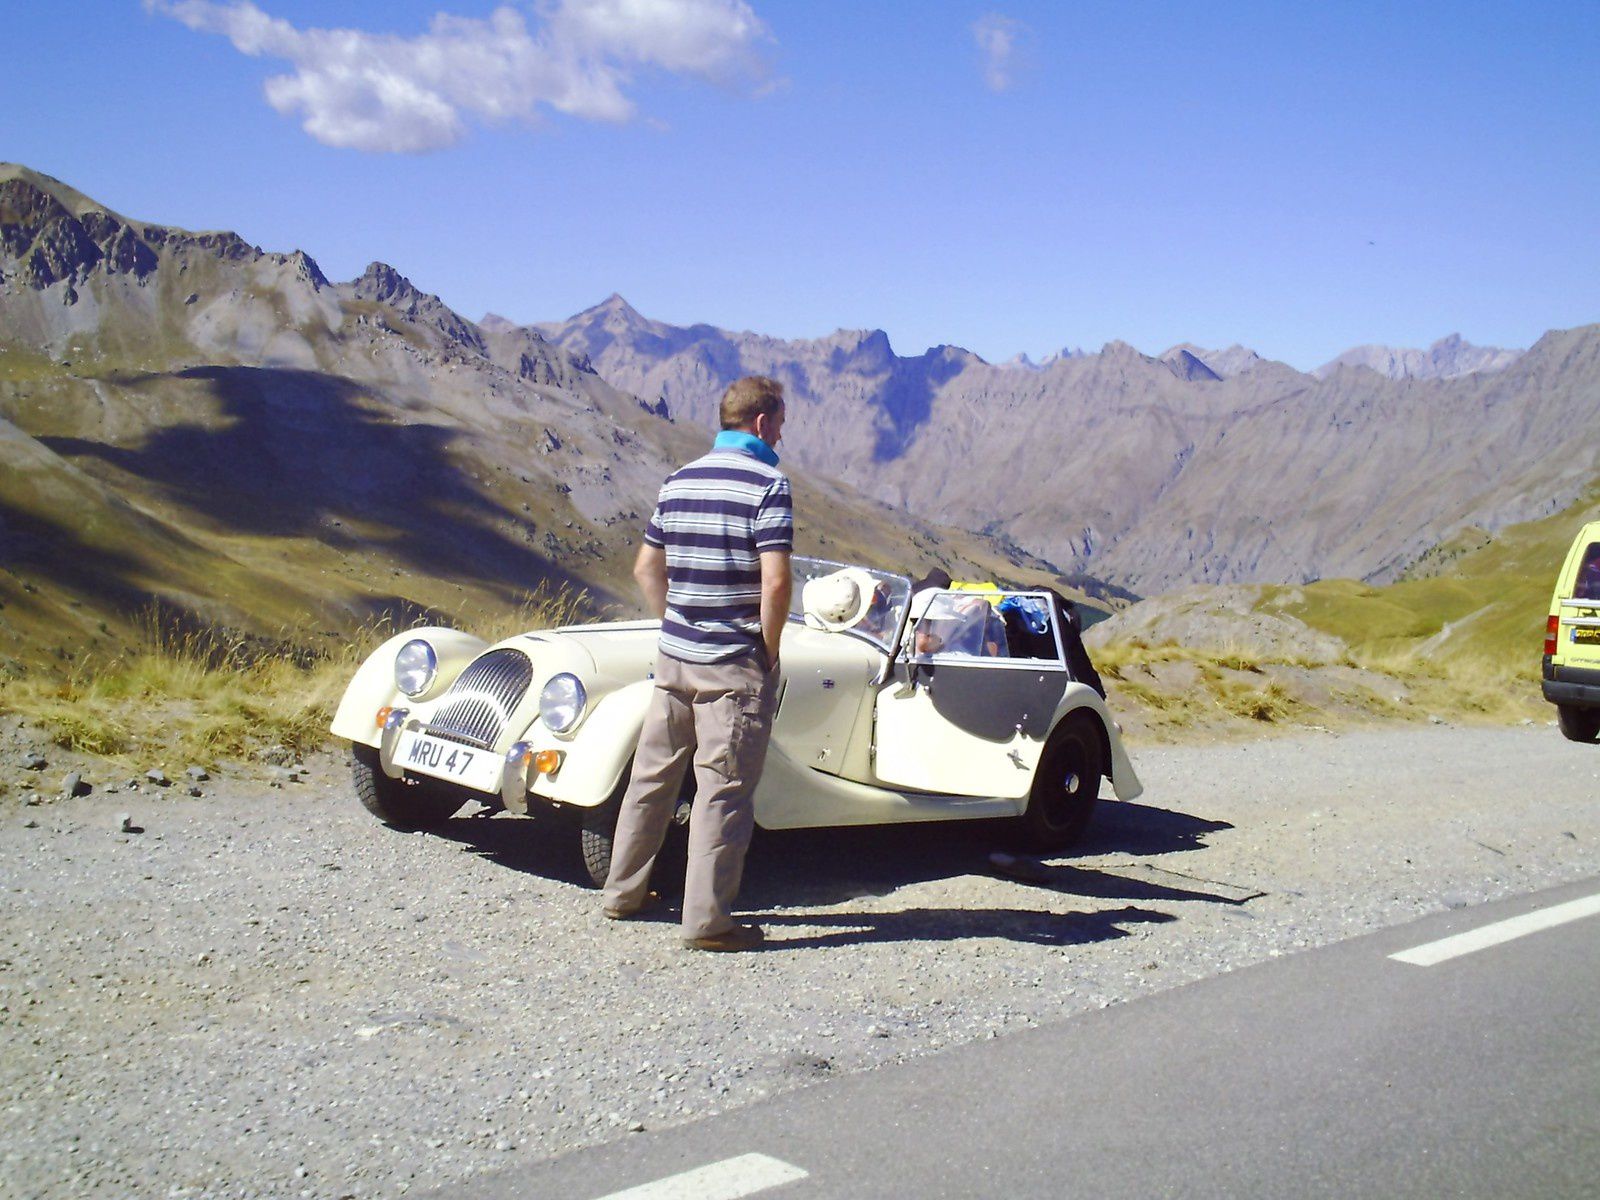 Goldwing - Notre voyage dans les Hautes-Alpes en Goldwing 1800 et Varadero 125 - 4ème jour 2/2